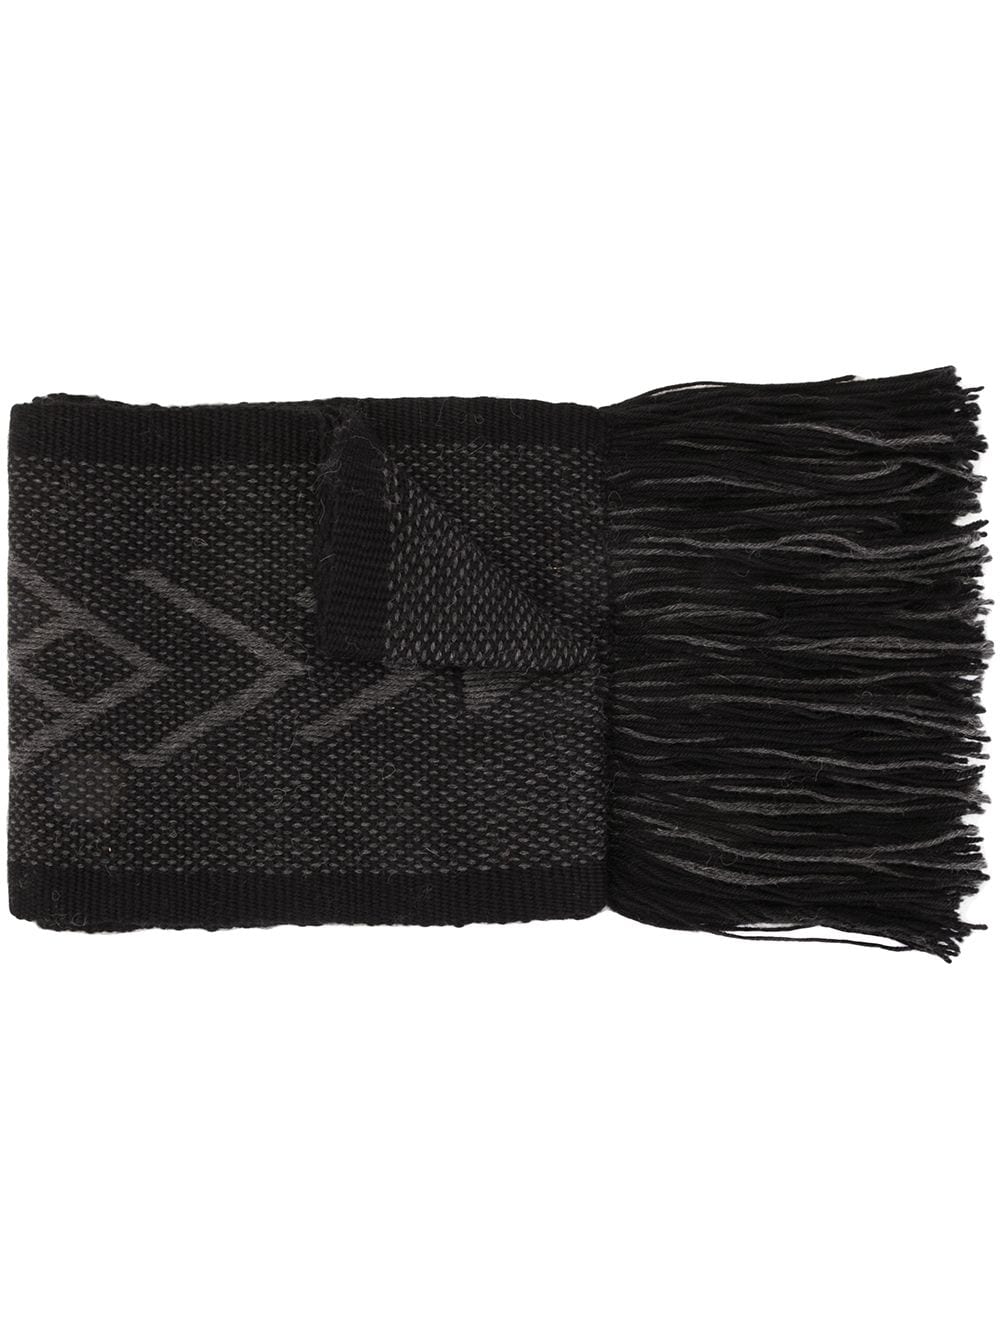 VOZ Mapu fringed scarf - Black von VOZ